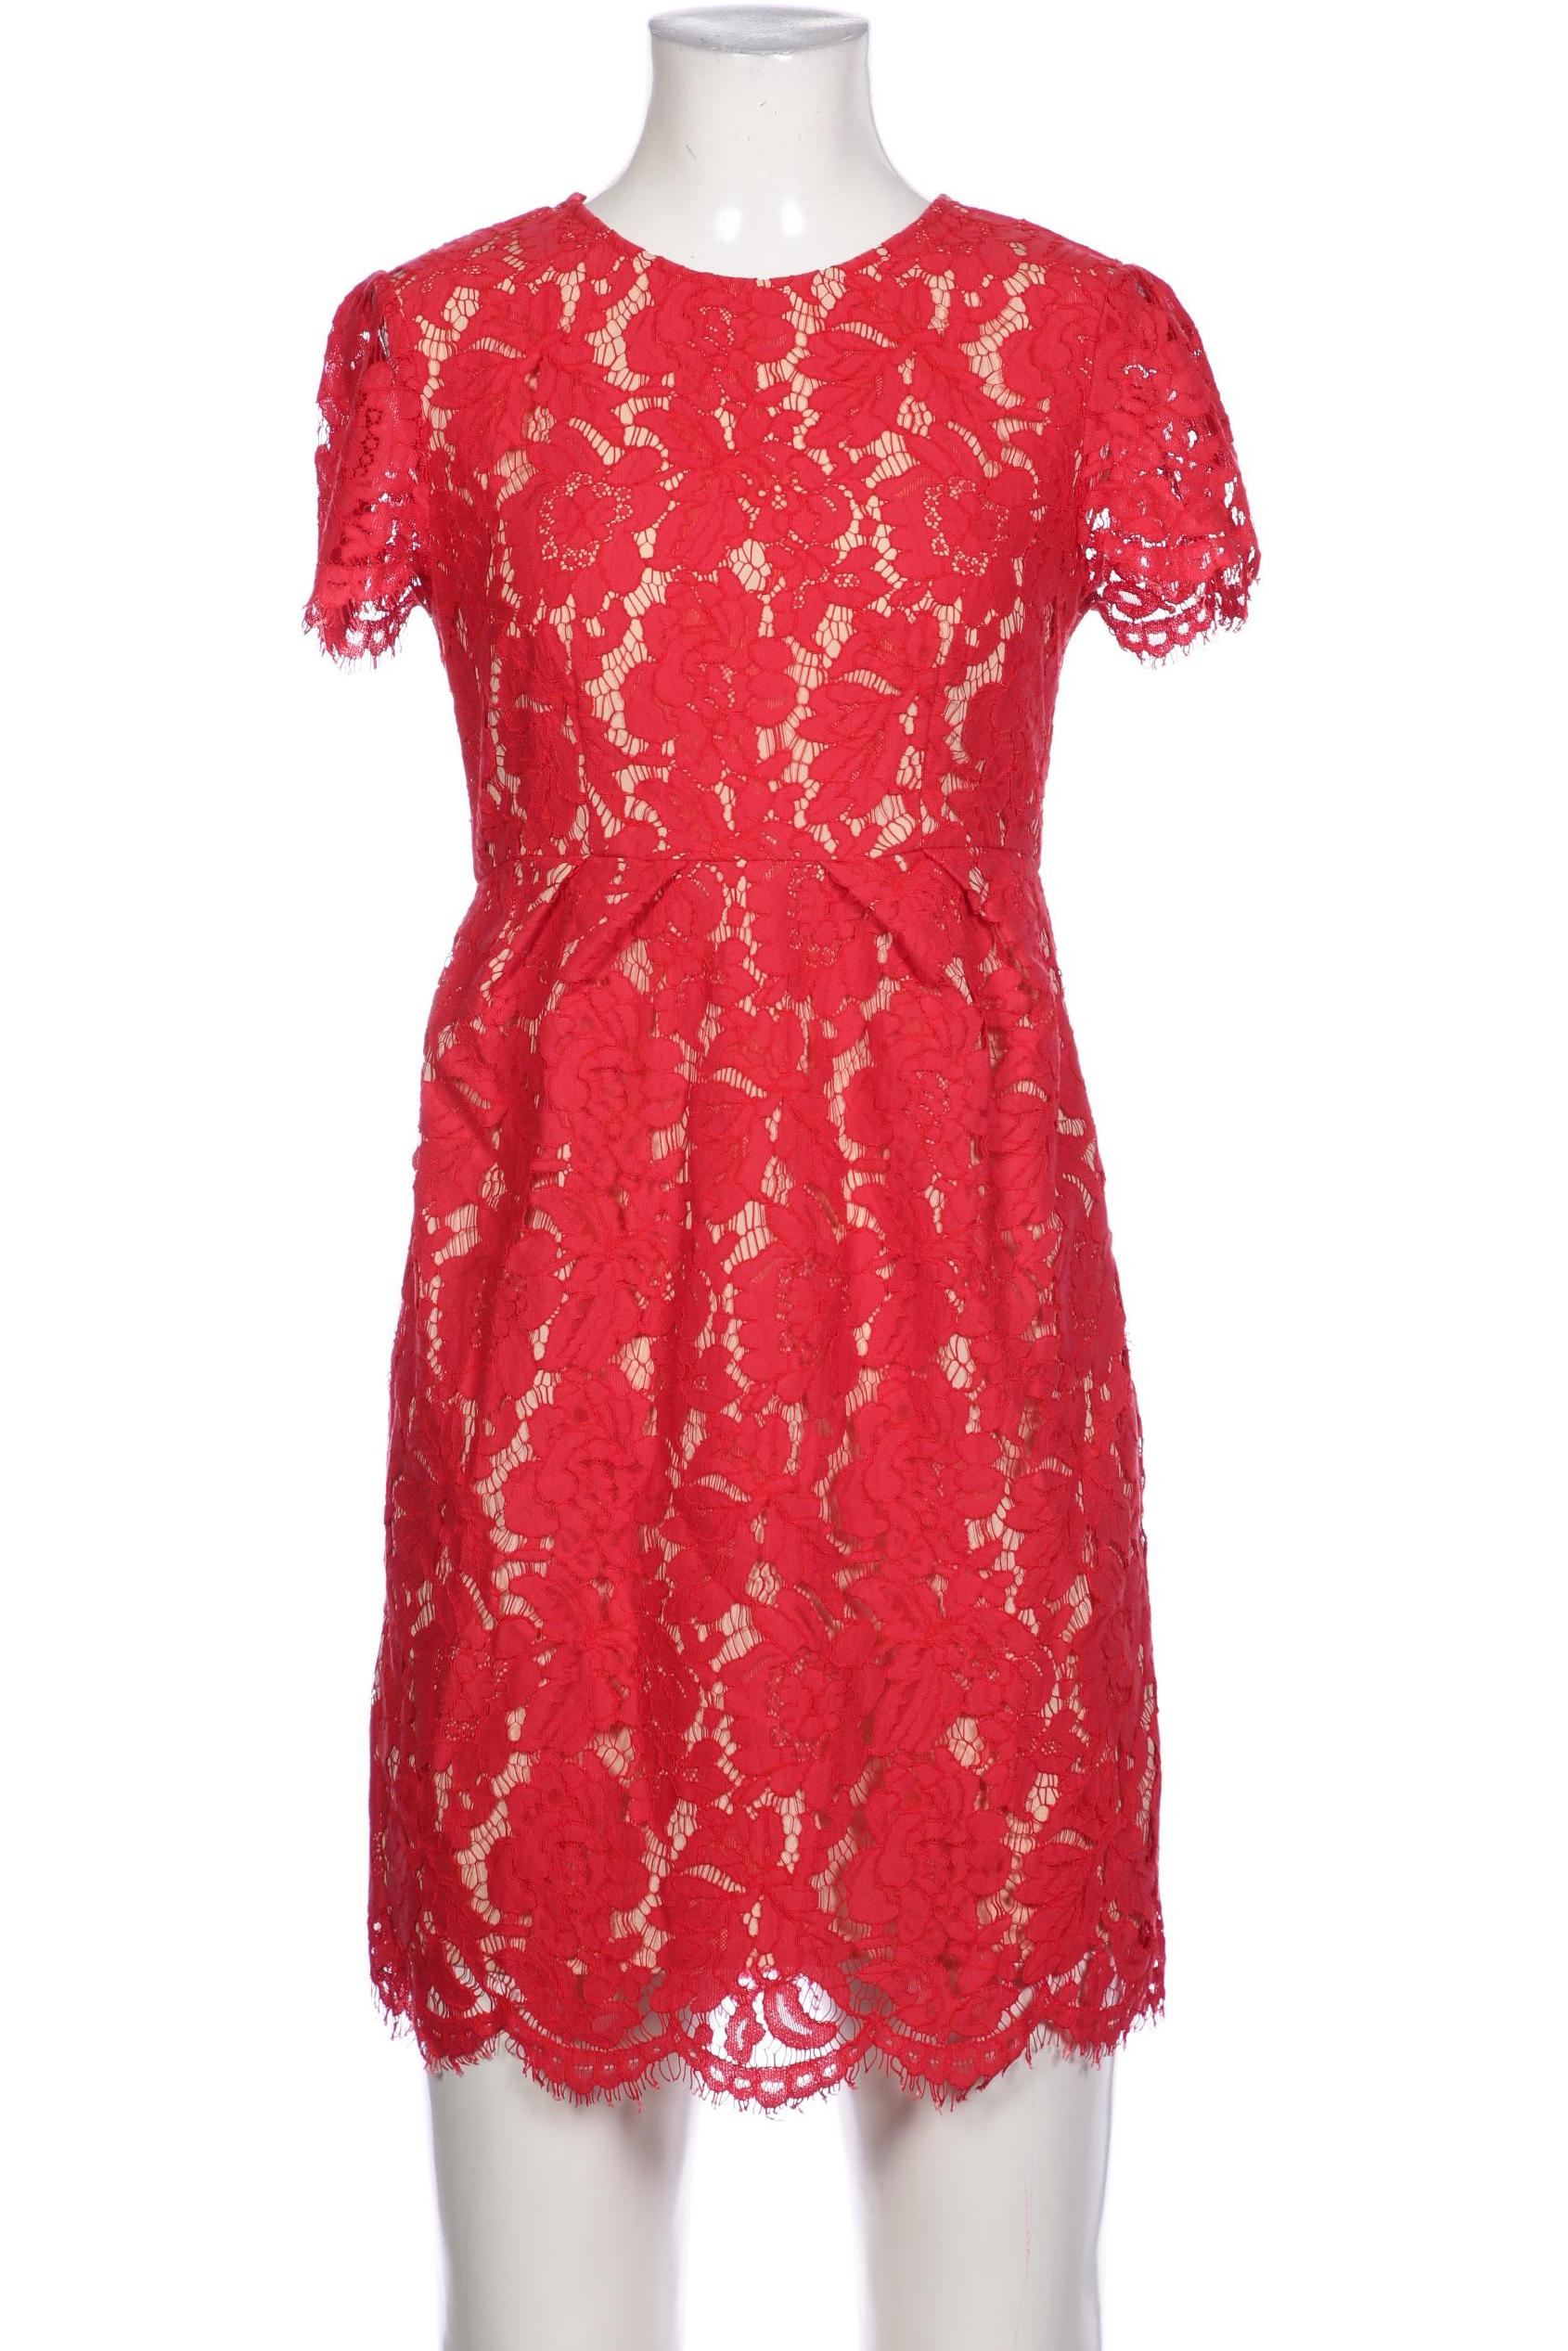 TWINSET Damen Kleid, rot von TWINSET